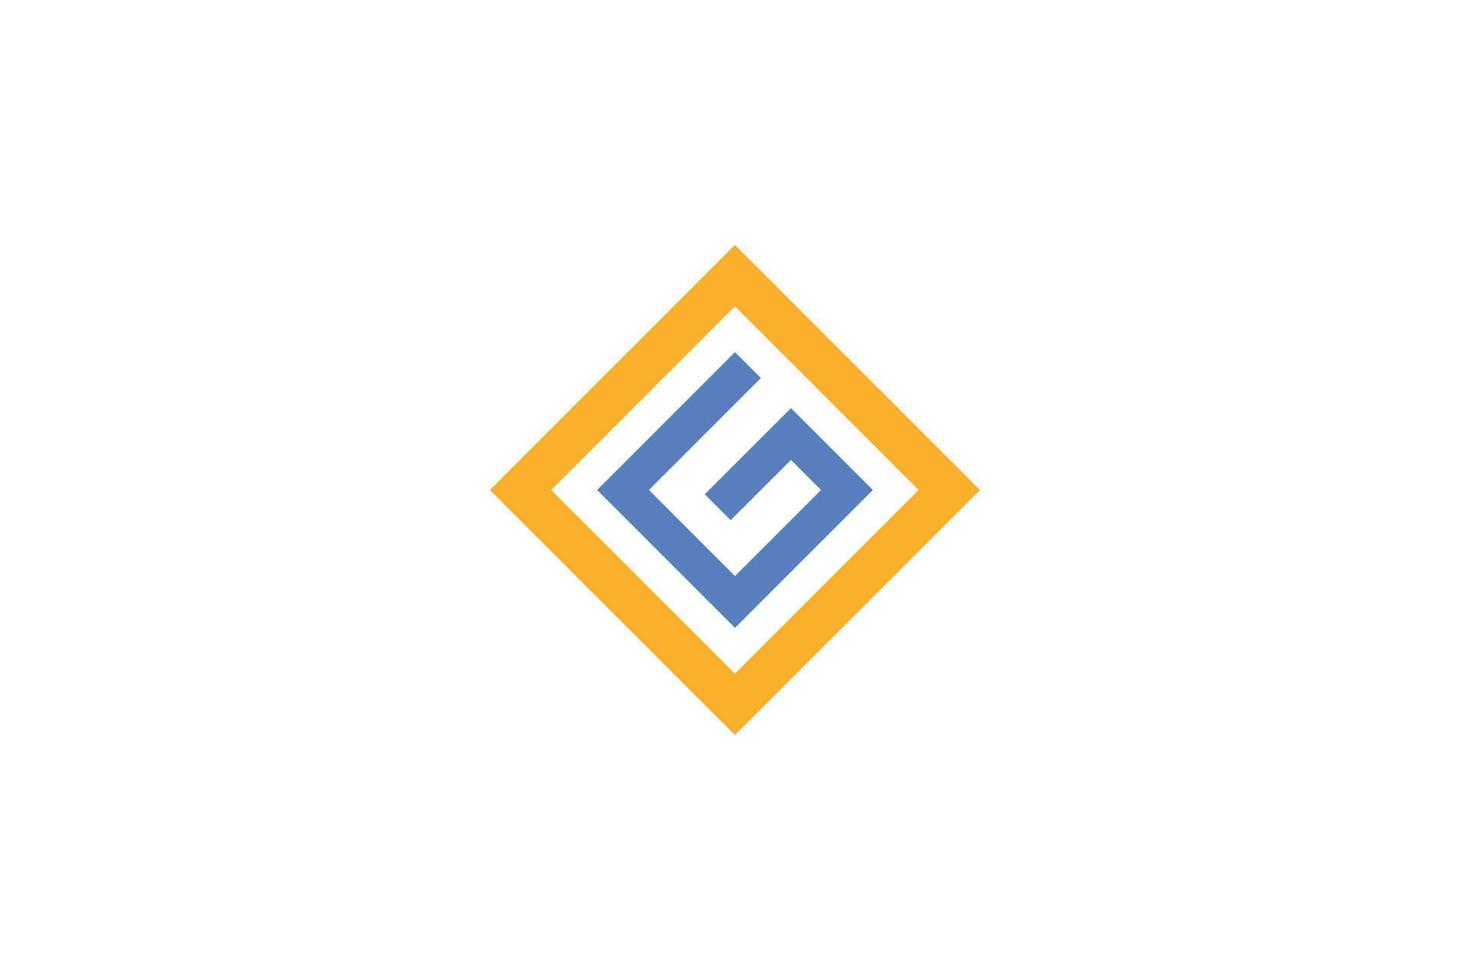 creativo lettera g logo vettore